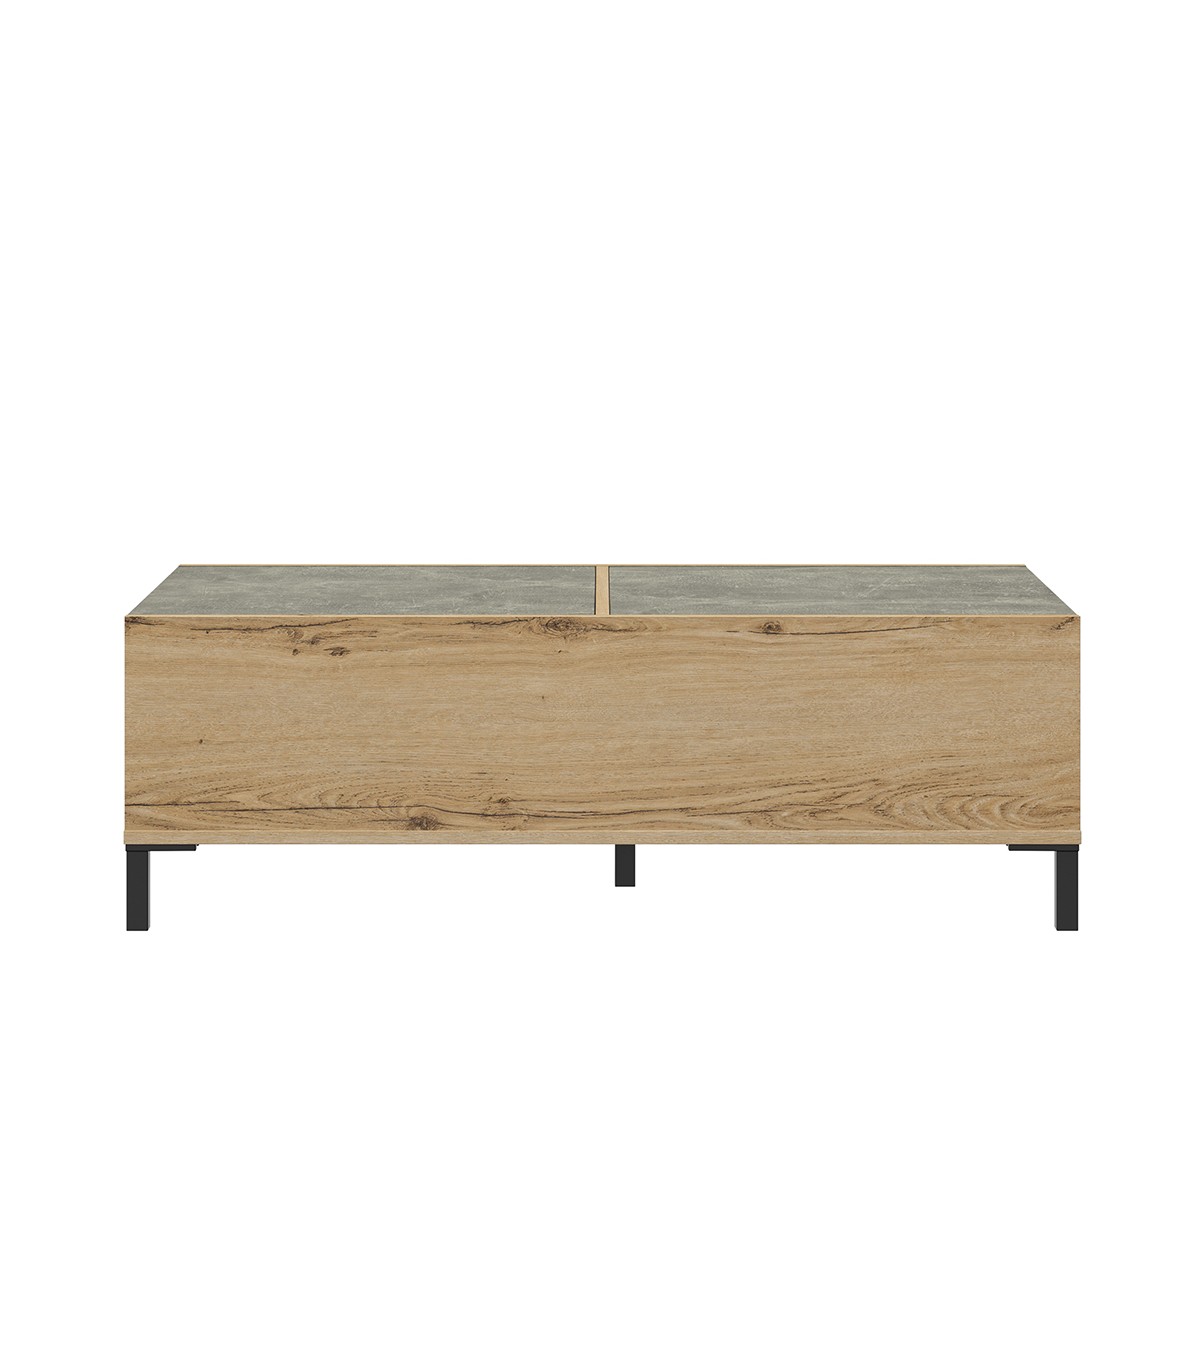 Table basse avec plateaux coulissants - Décor chêne et béton